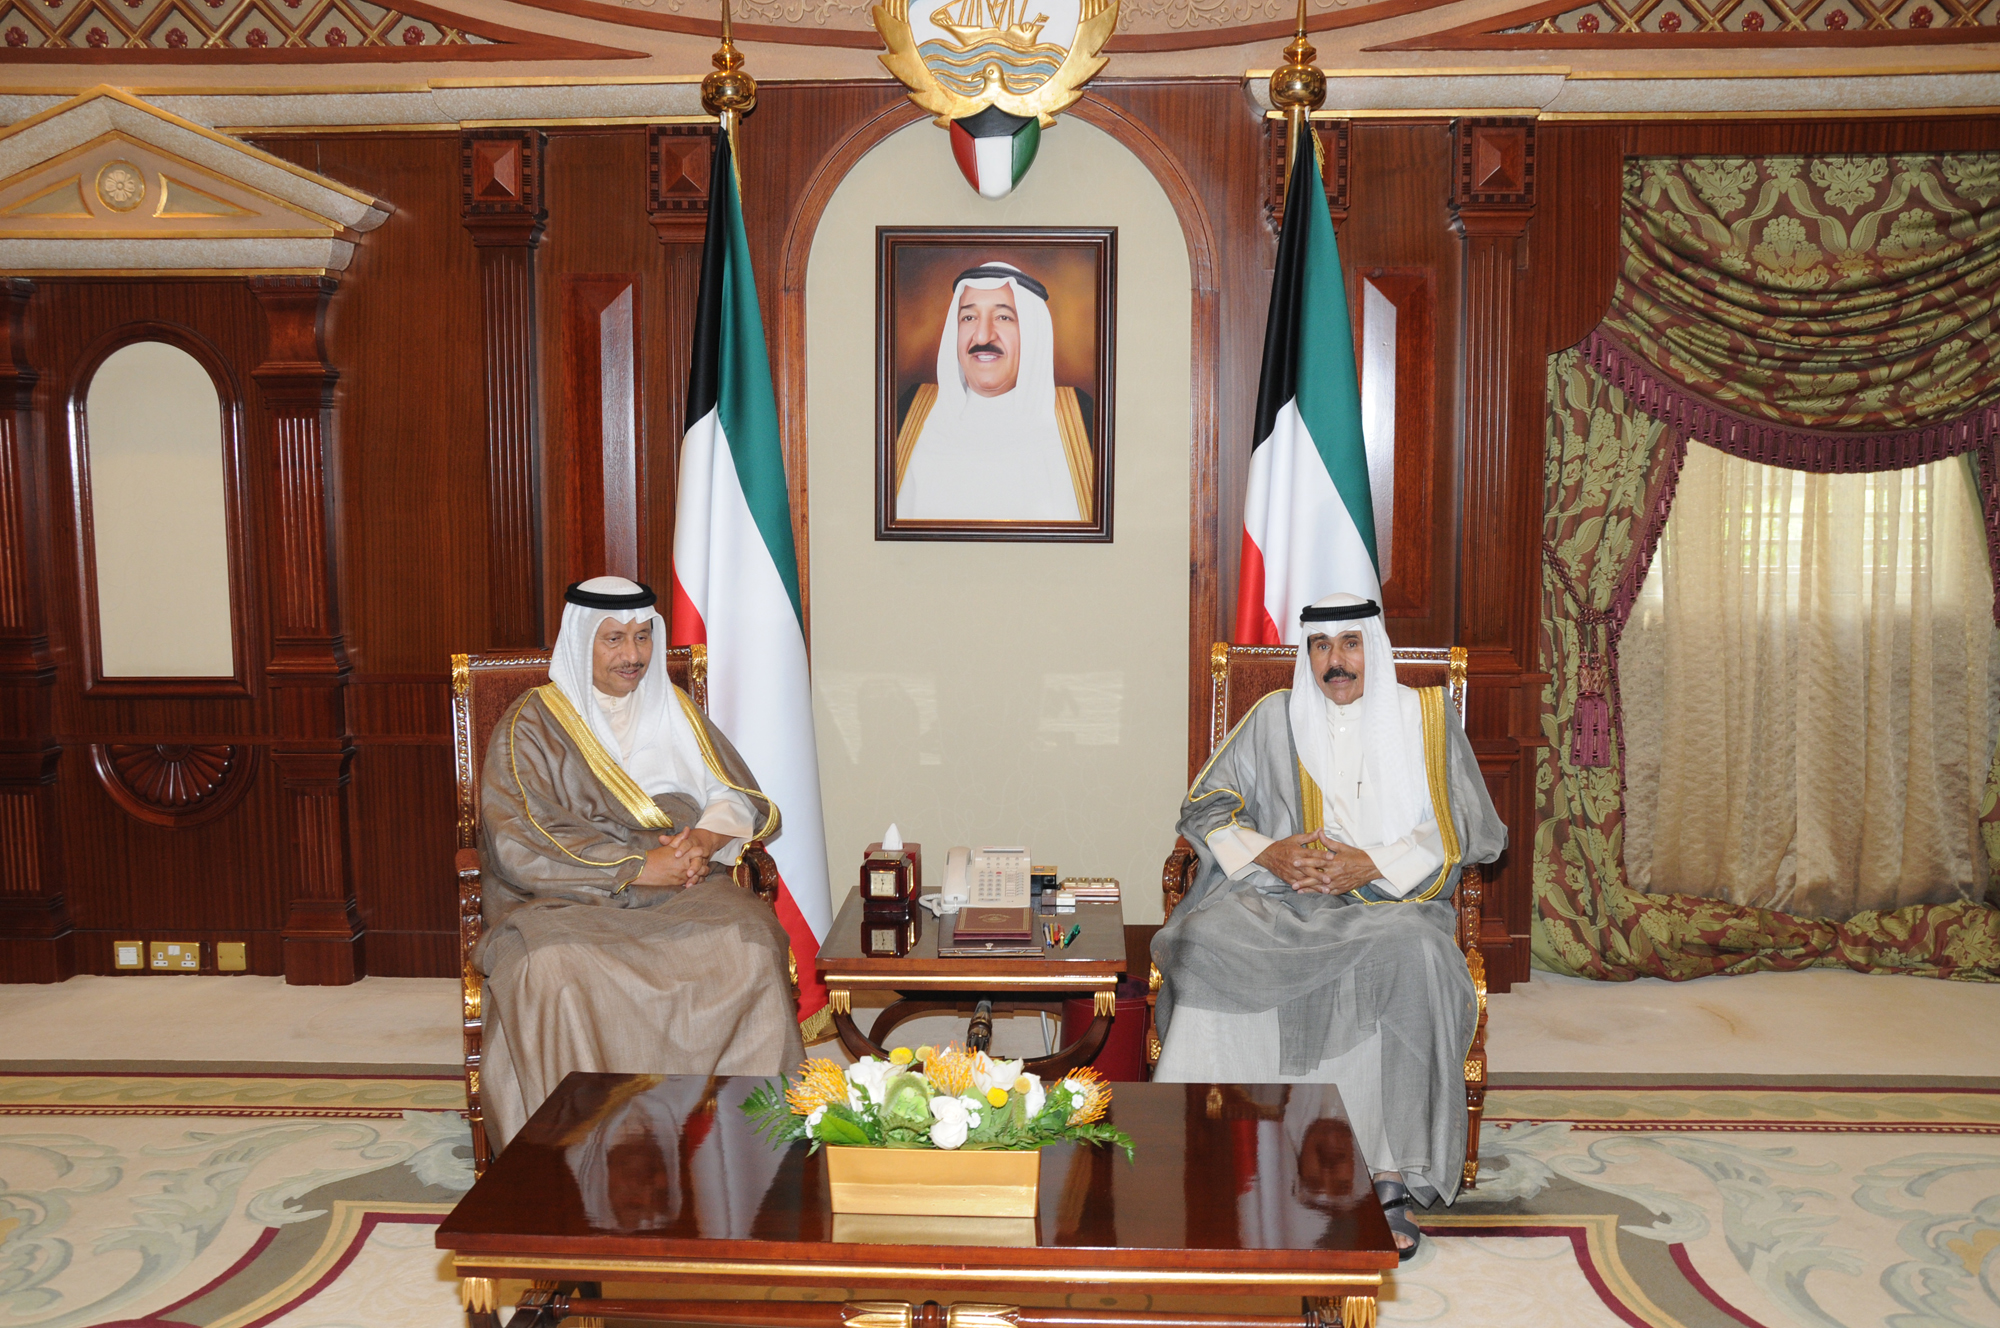 His Highness the Crown Prince Sheikh Nawaf Al-Ahmad Al-Jaber Al-Sabah received His Highness the Prime Minister Sheikh Jaber Al-Mubarak Al-Hamad Al-Sabah